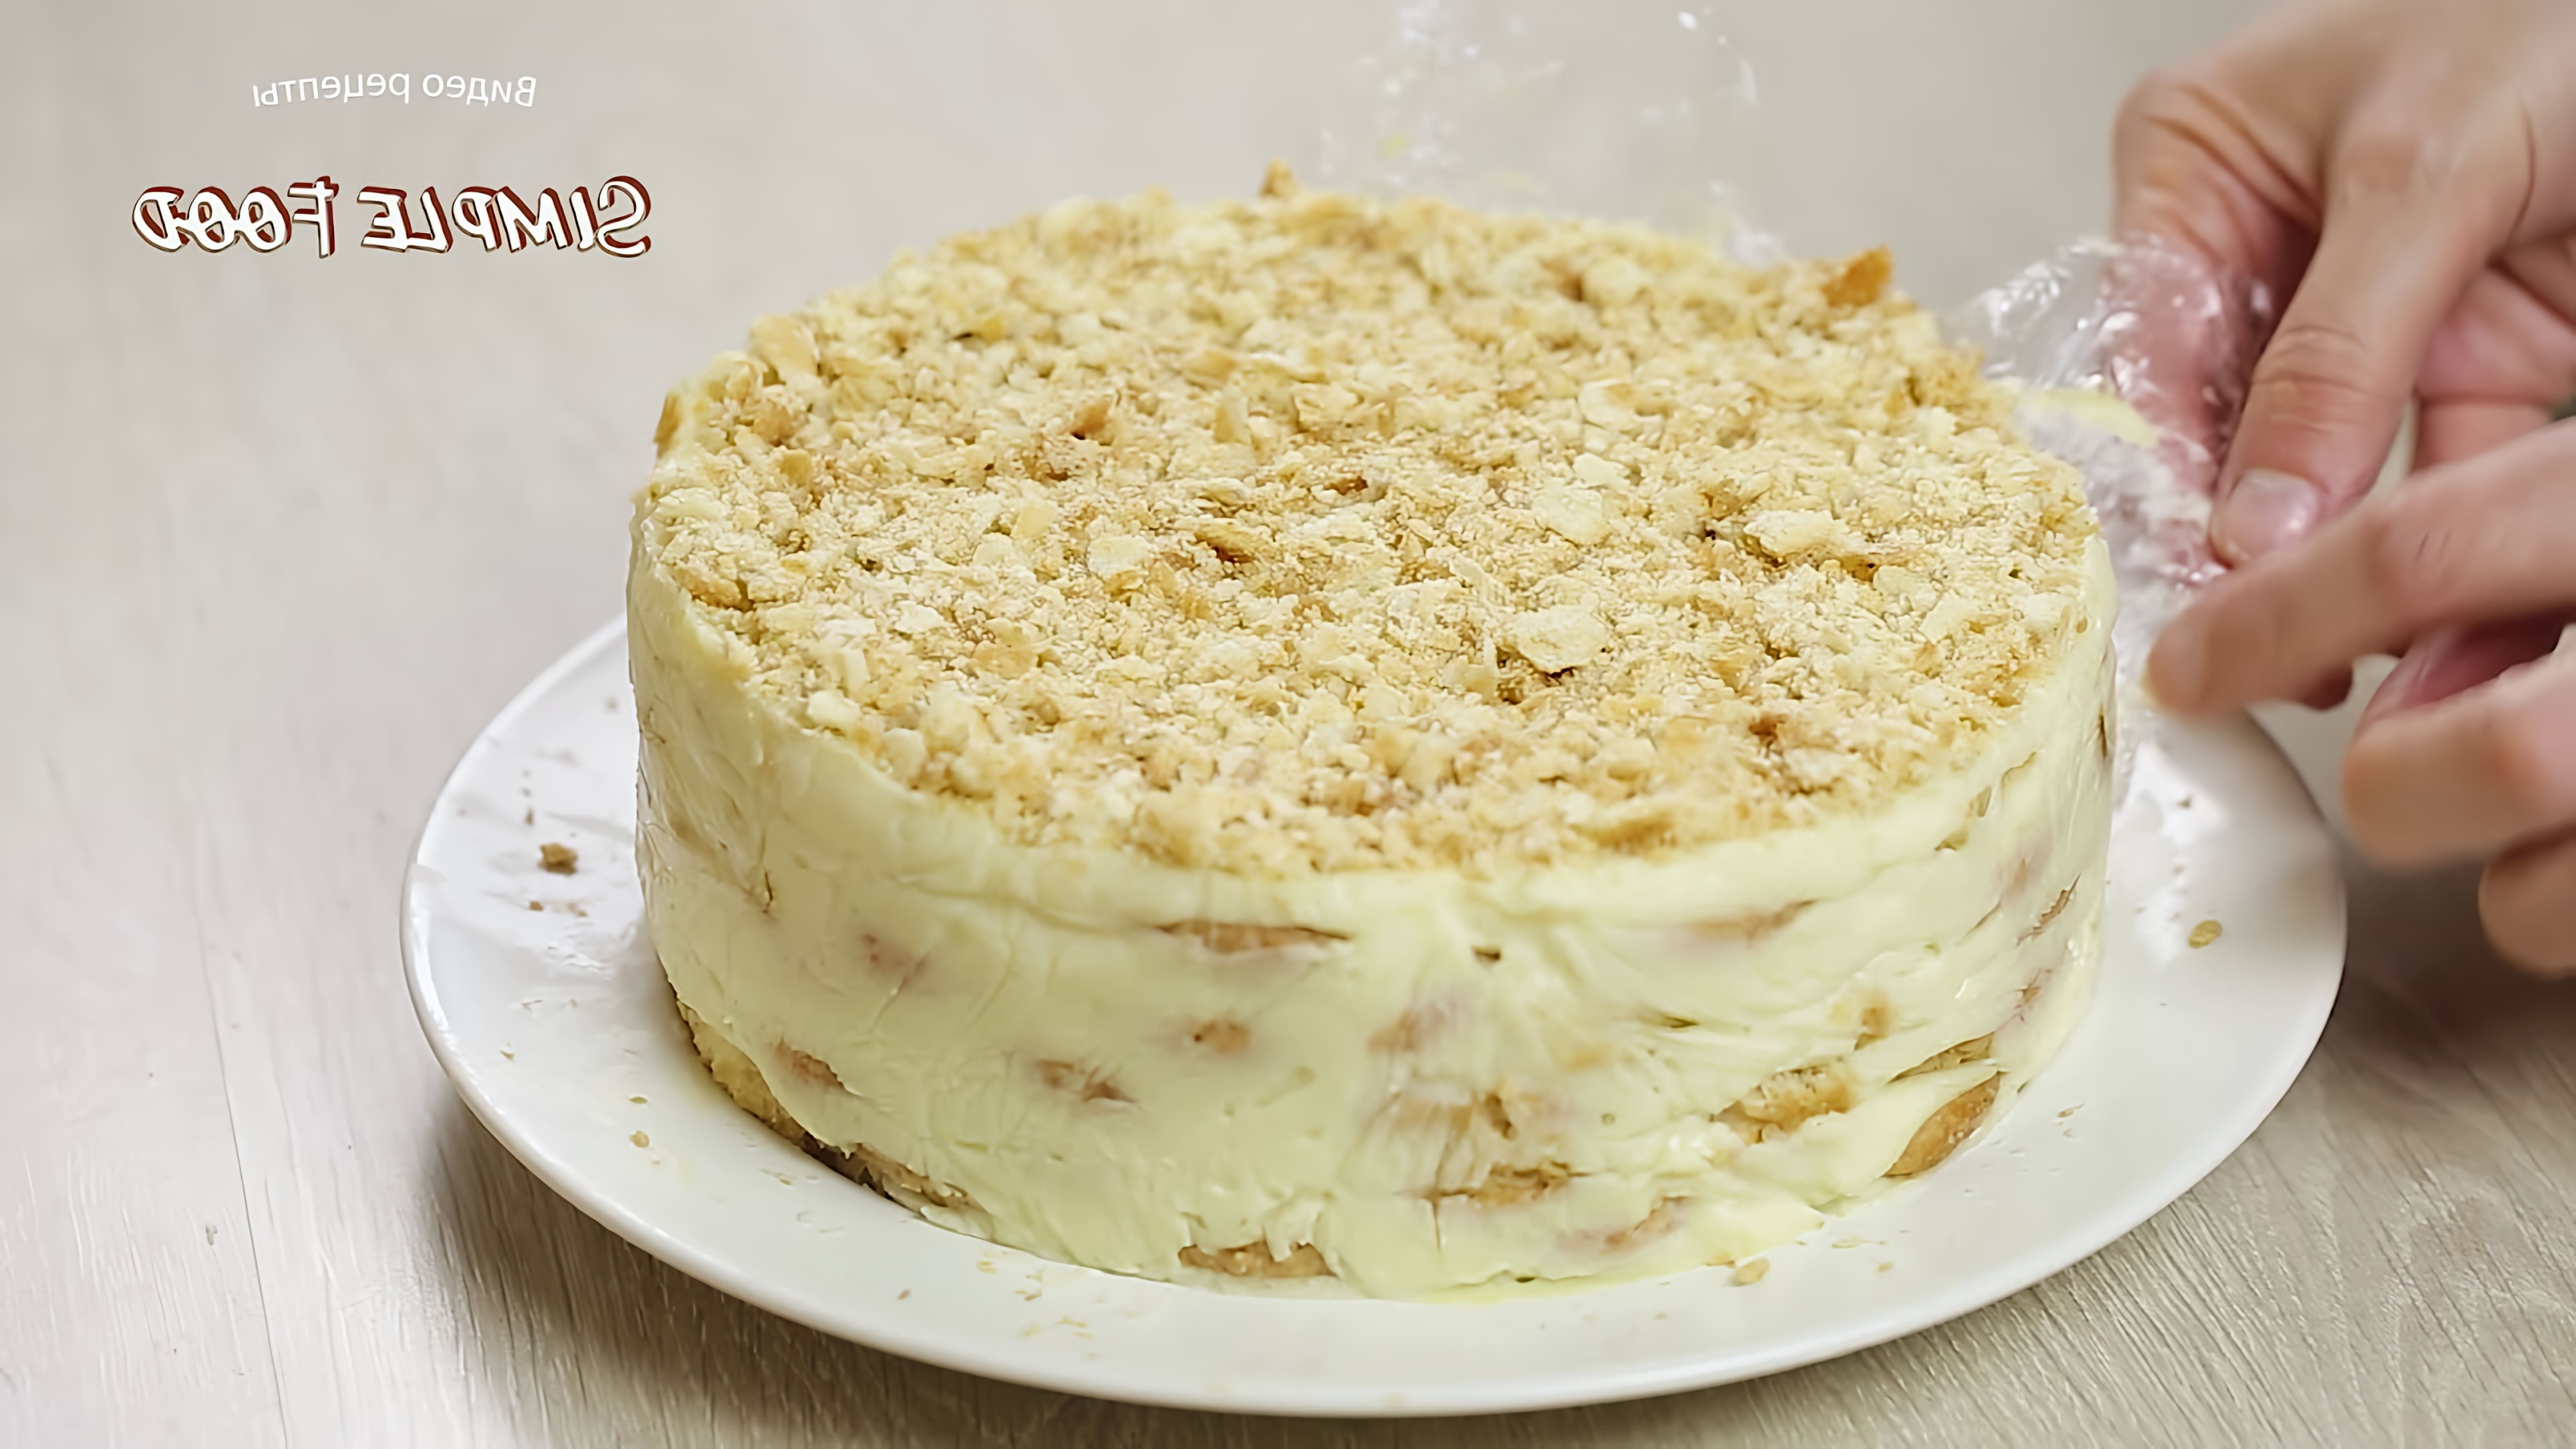 В этом видео демонстрируется рецепт приготовления торта "Наполеон" без выпечки